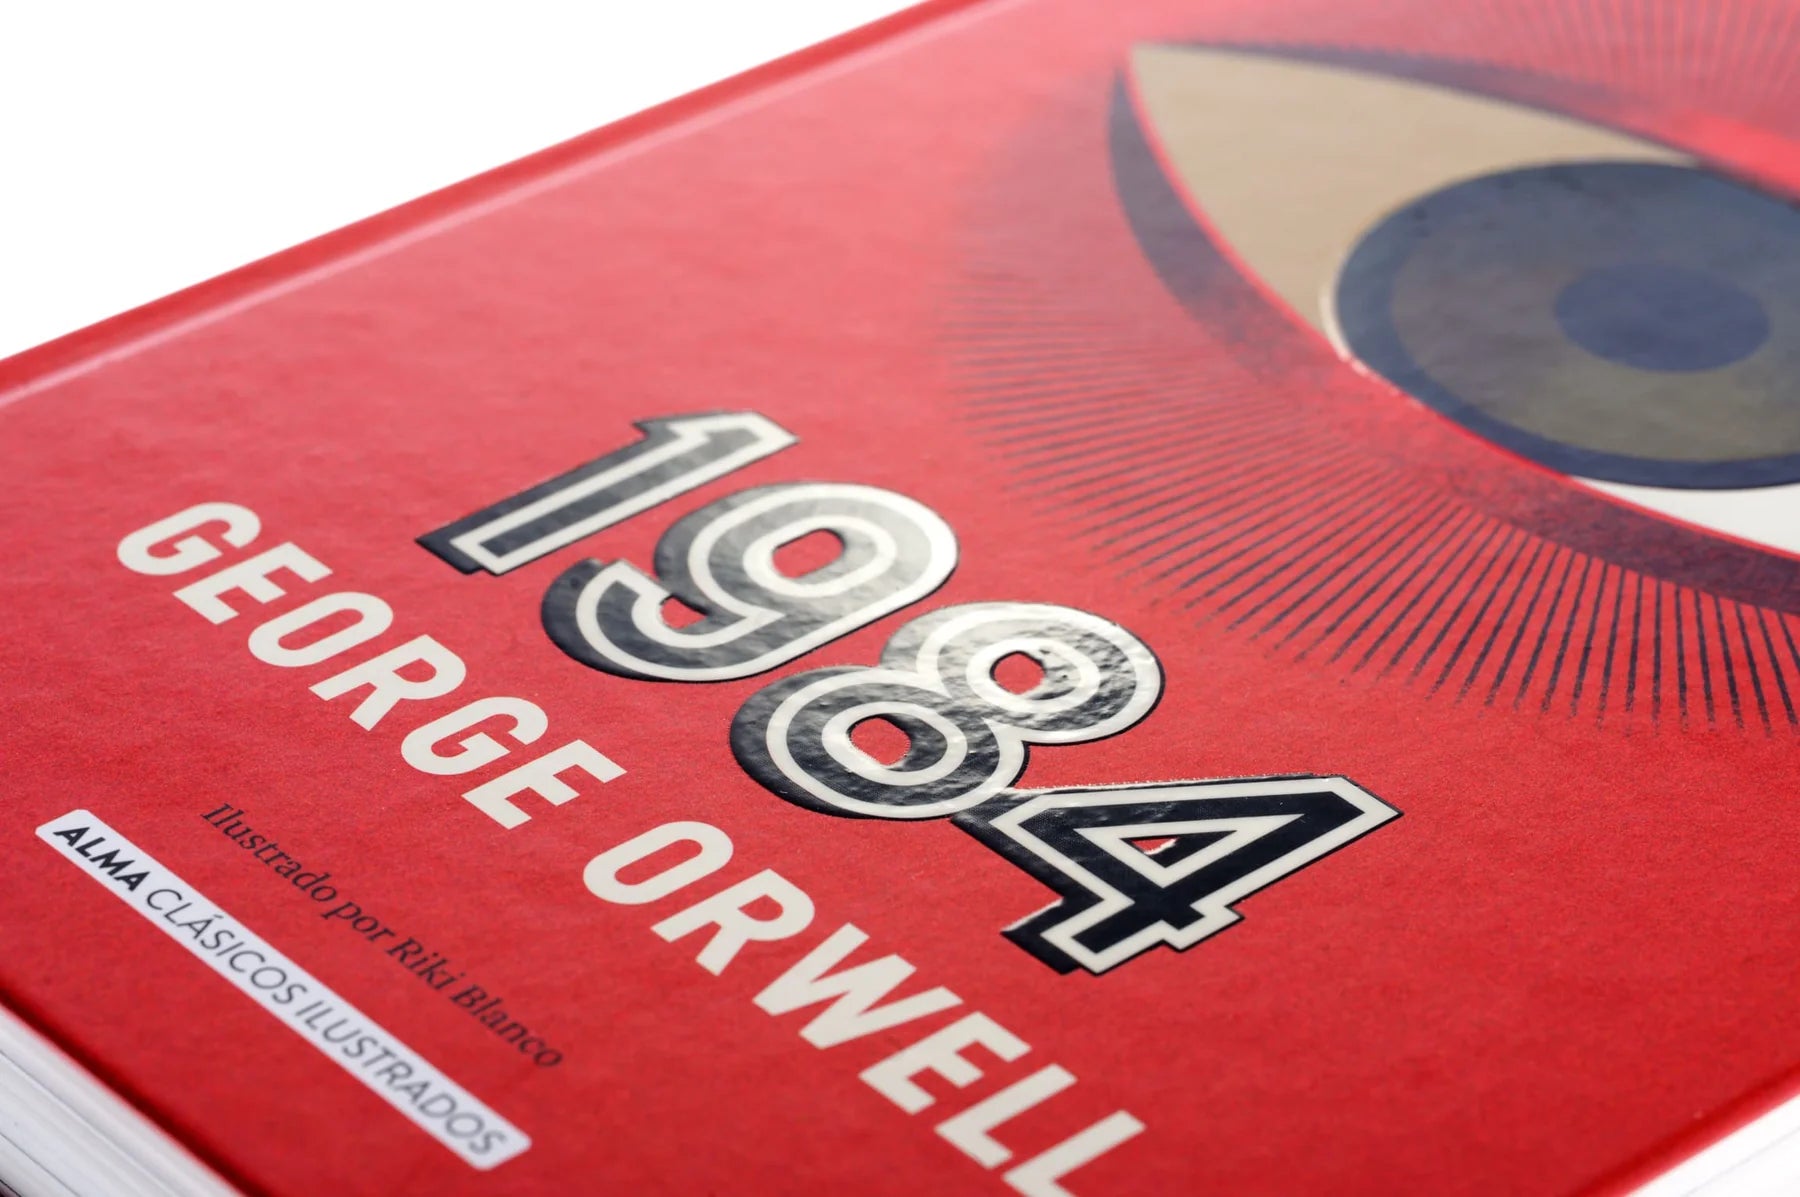 1984 de George ORWELL - Explicación y RESUMEN Completo! 